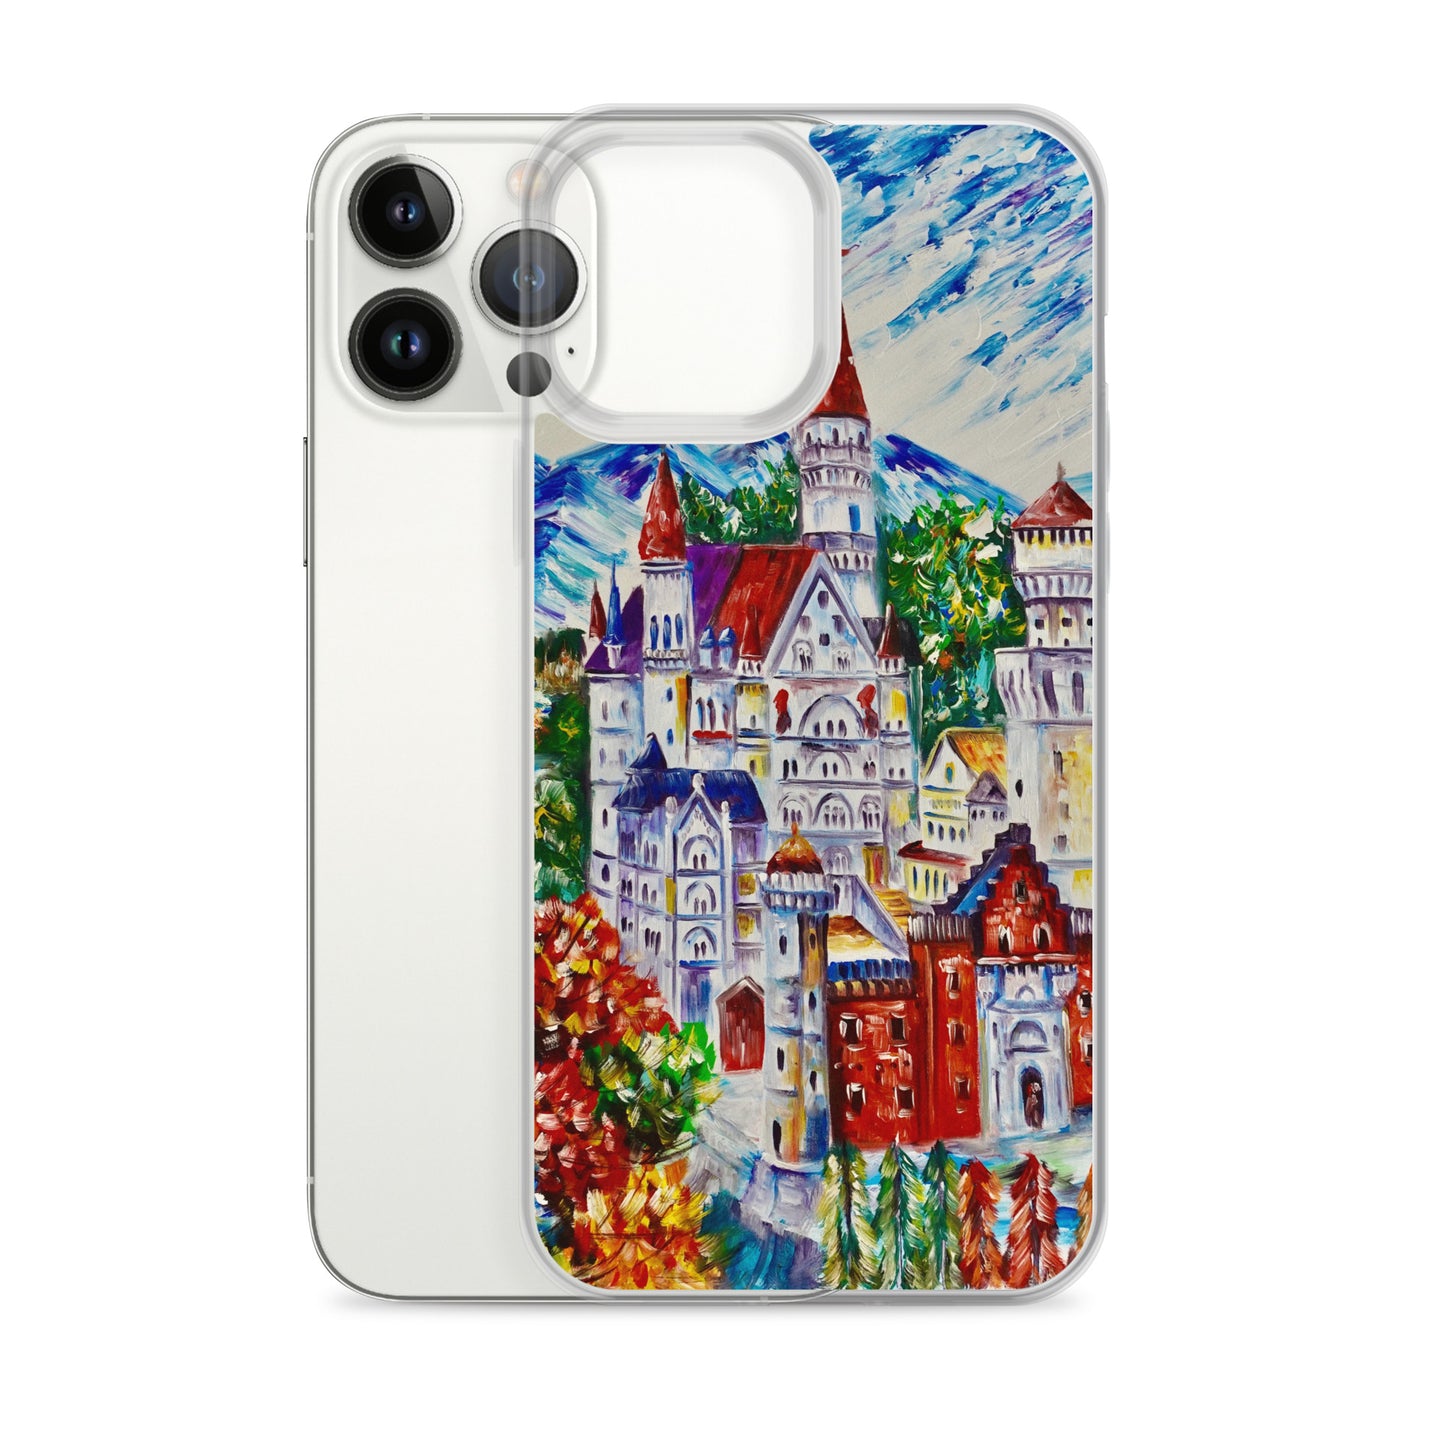 Neuschwanstein castle iPhone case